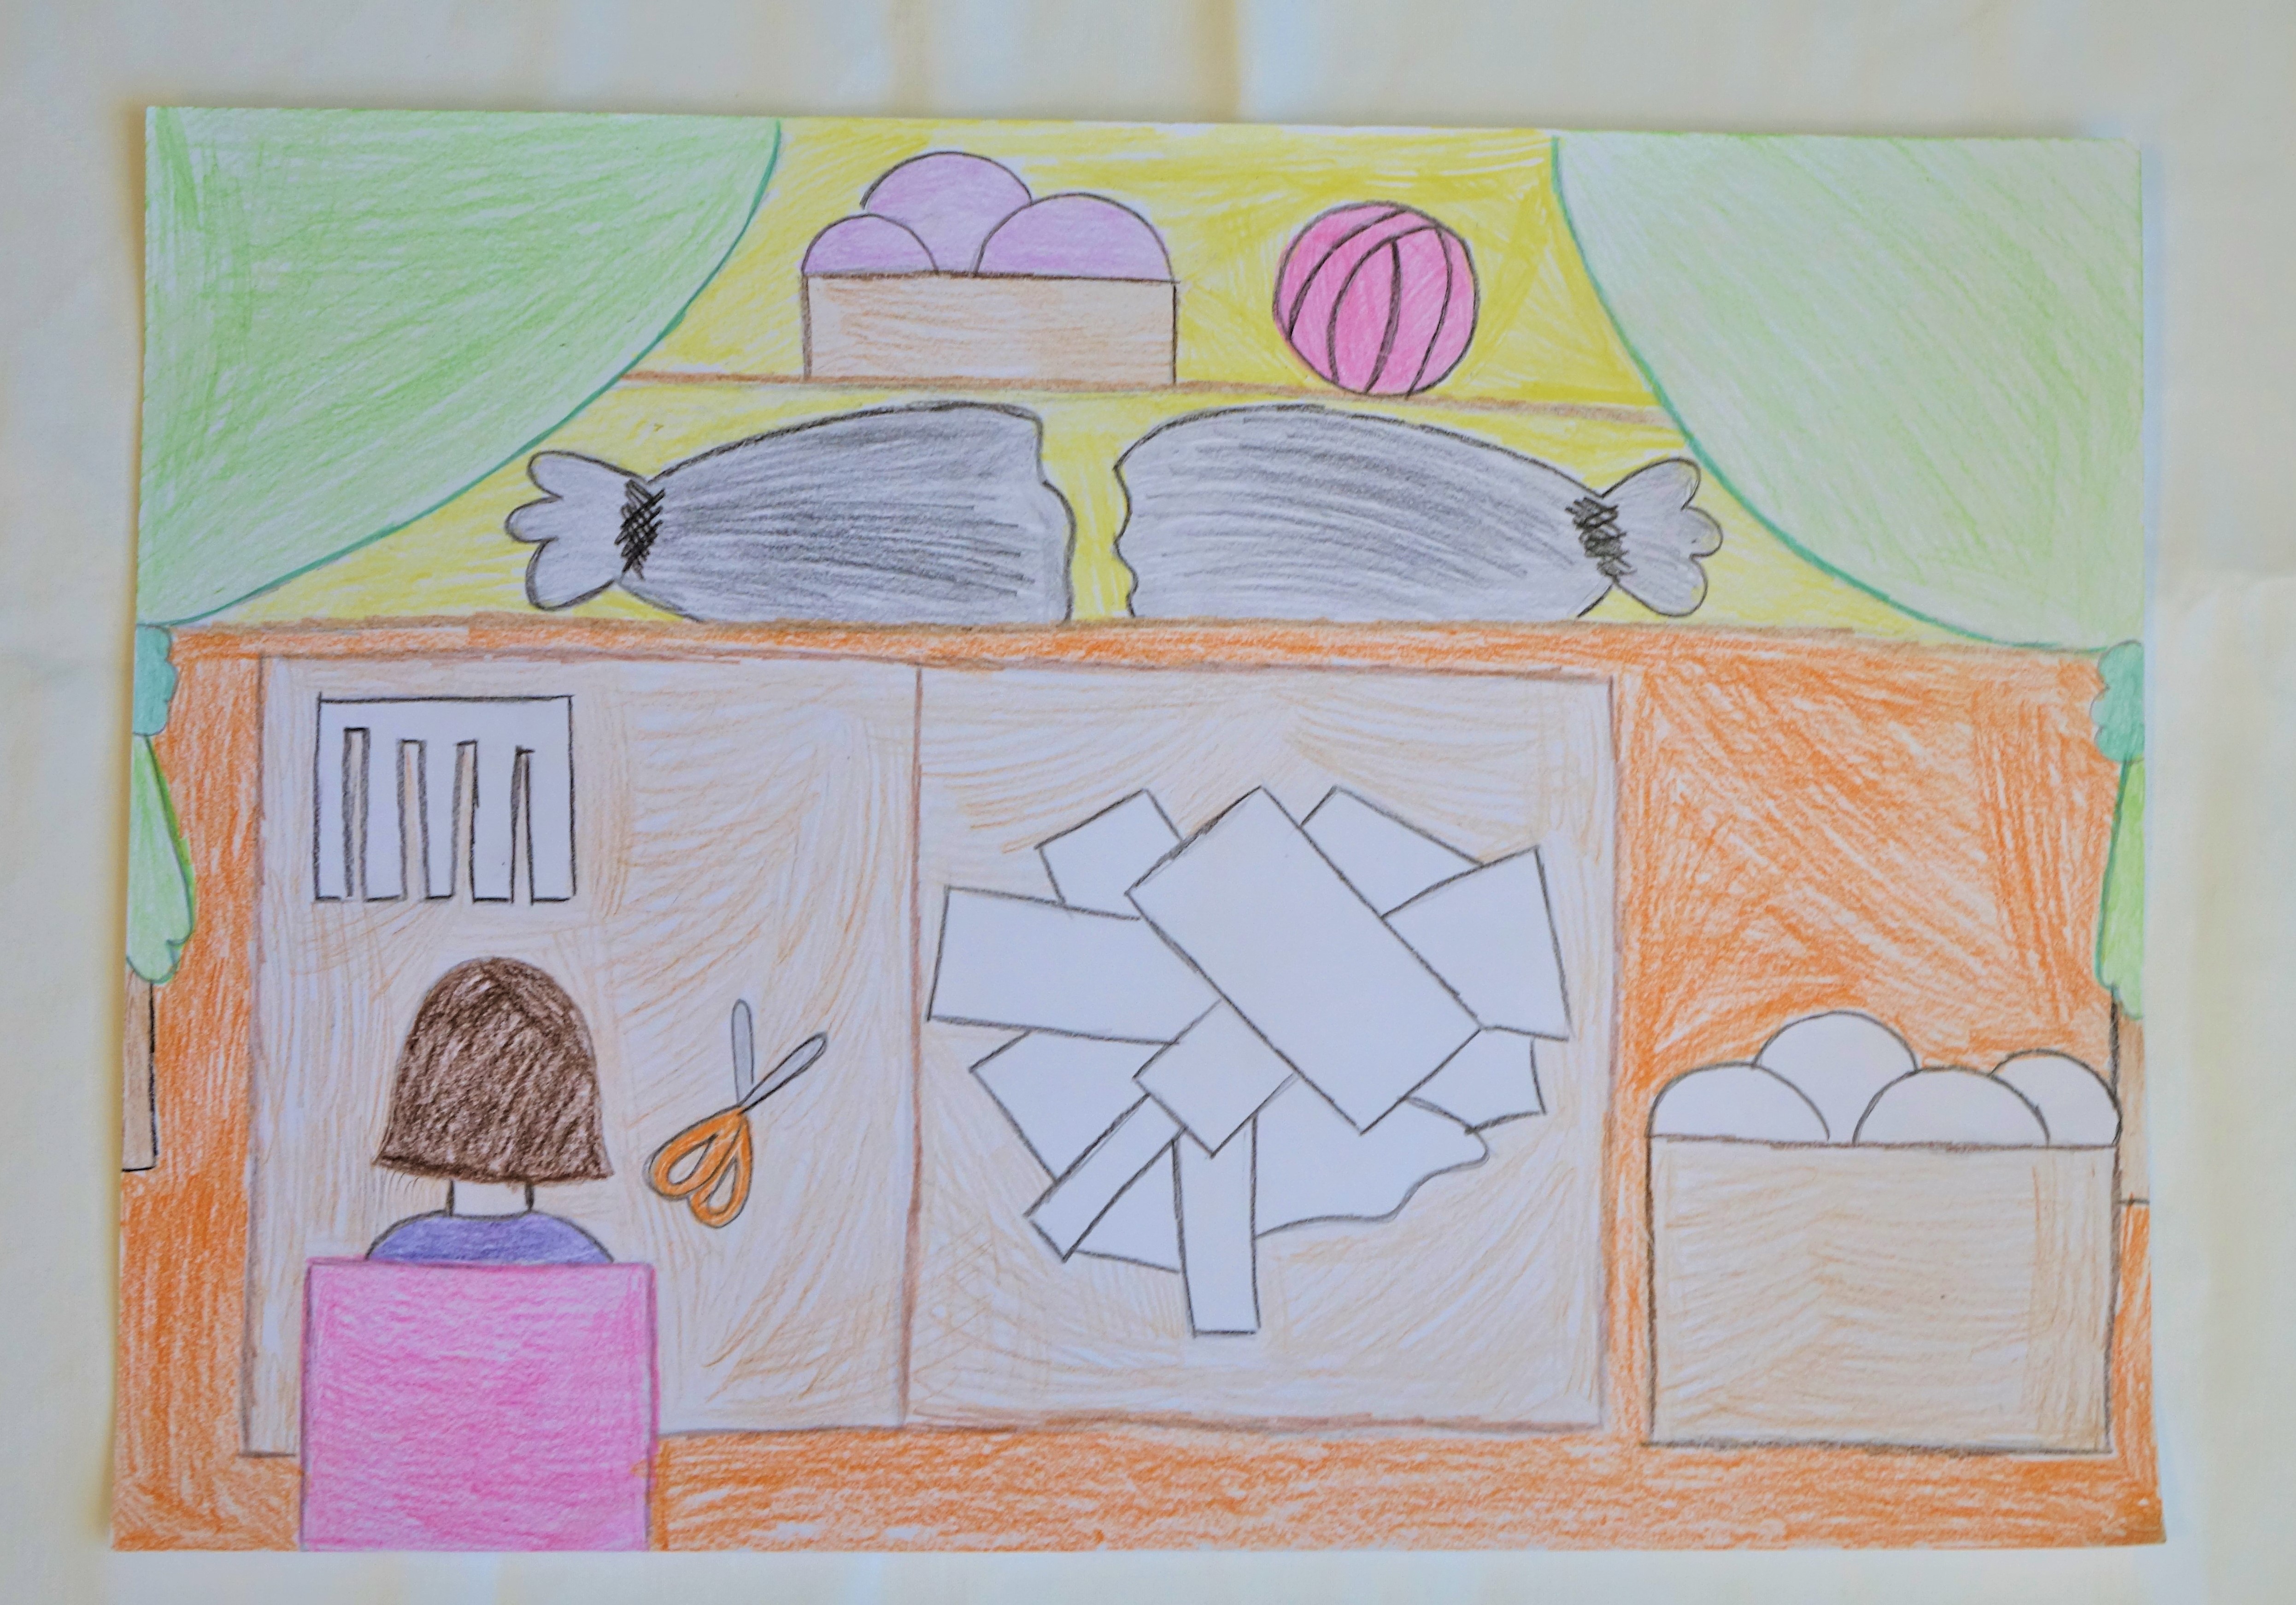 A rajz A4 méretben készült, színes ceruzával. A kép középpontjában egy barna színű asztal látható, rajta a varrodában végzett  szabás munkafolyamata látható lerajzolva. A kép bal alsó sarkában a pályázó lerajzolta magát, amint ül egy rózsaszín széken háttal, barna hajjal. A kép felső részében két oldalt zöld színű függöny látható összekötve, háttérben polc látható a varrodai alapanyagokkal, gombolyagokkal, ruhaanyagokkal.